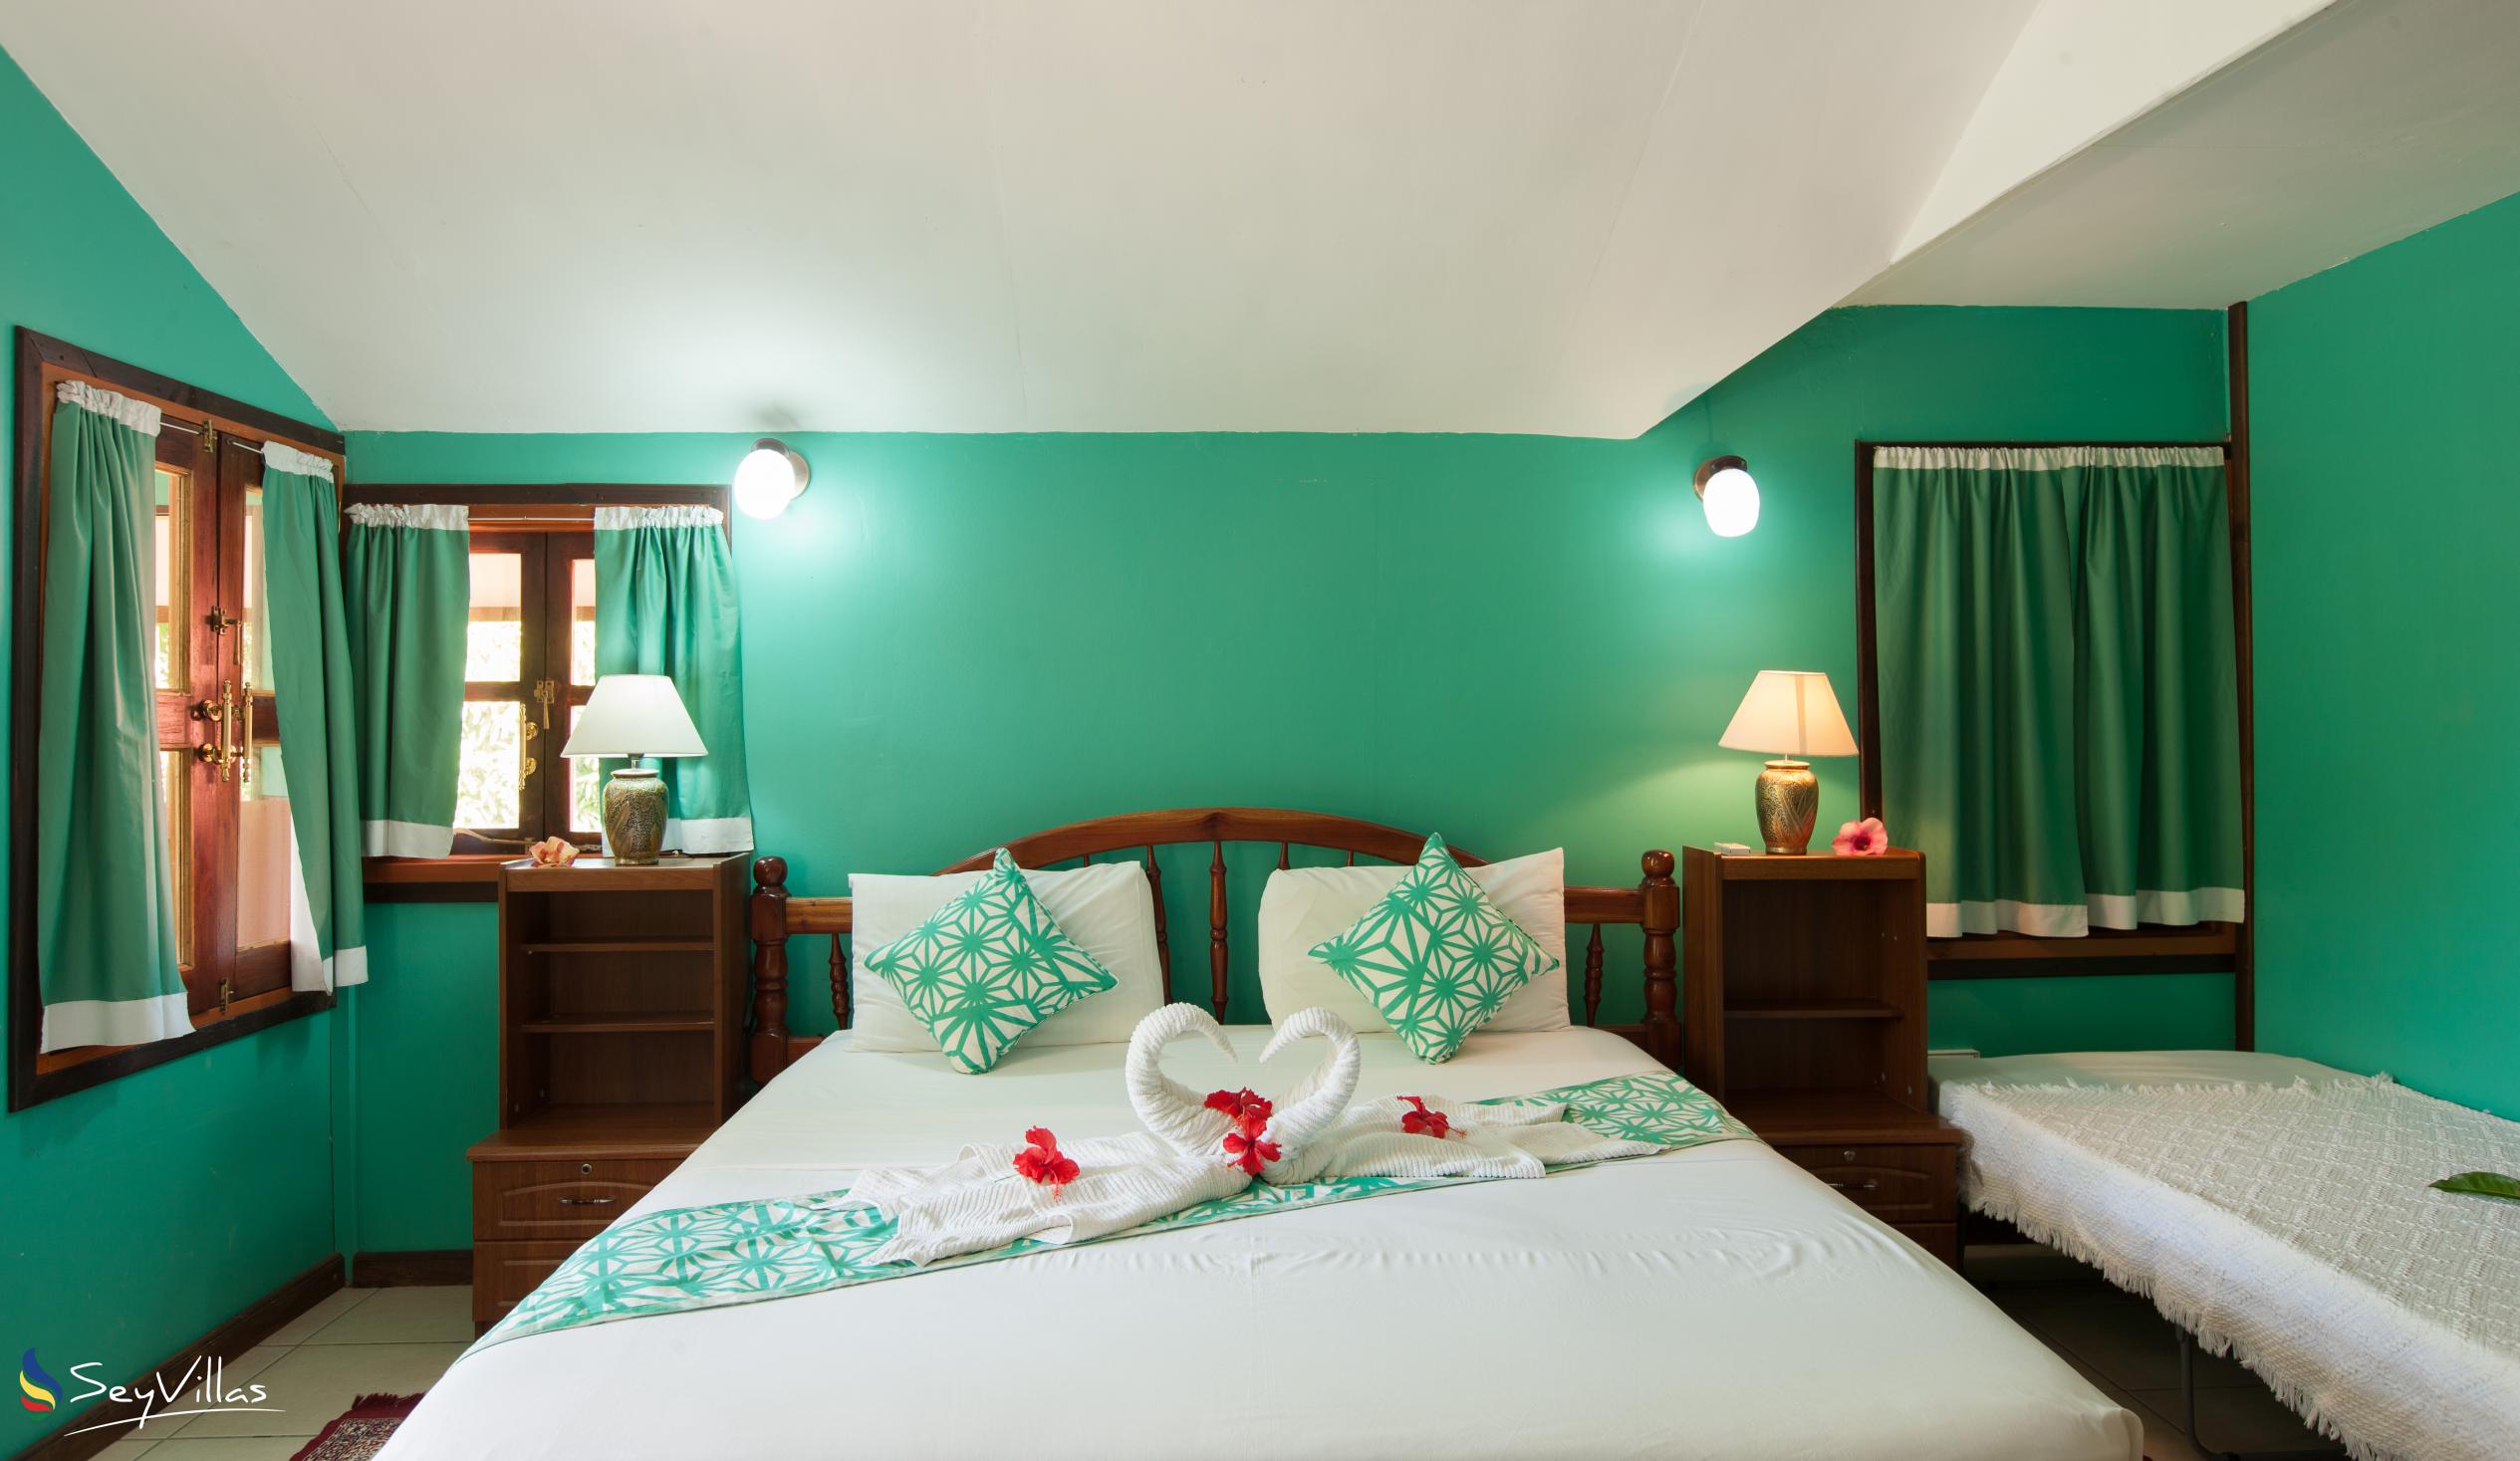 Foto 49: Belle des Iles Guest House - Chambre Double avec balcon - La Digue (Seychelles)